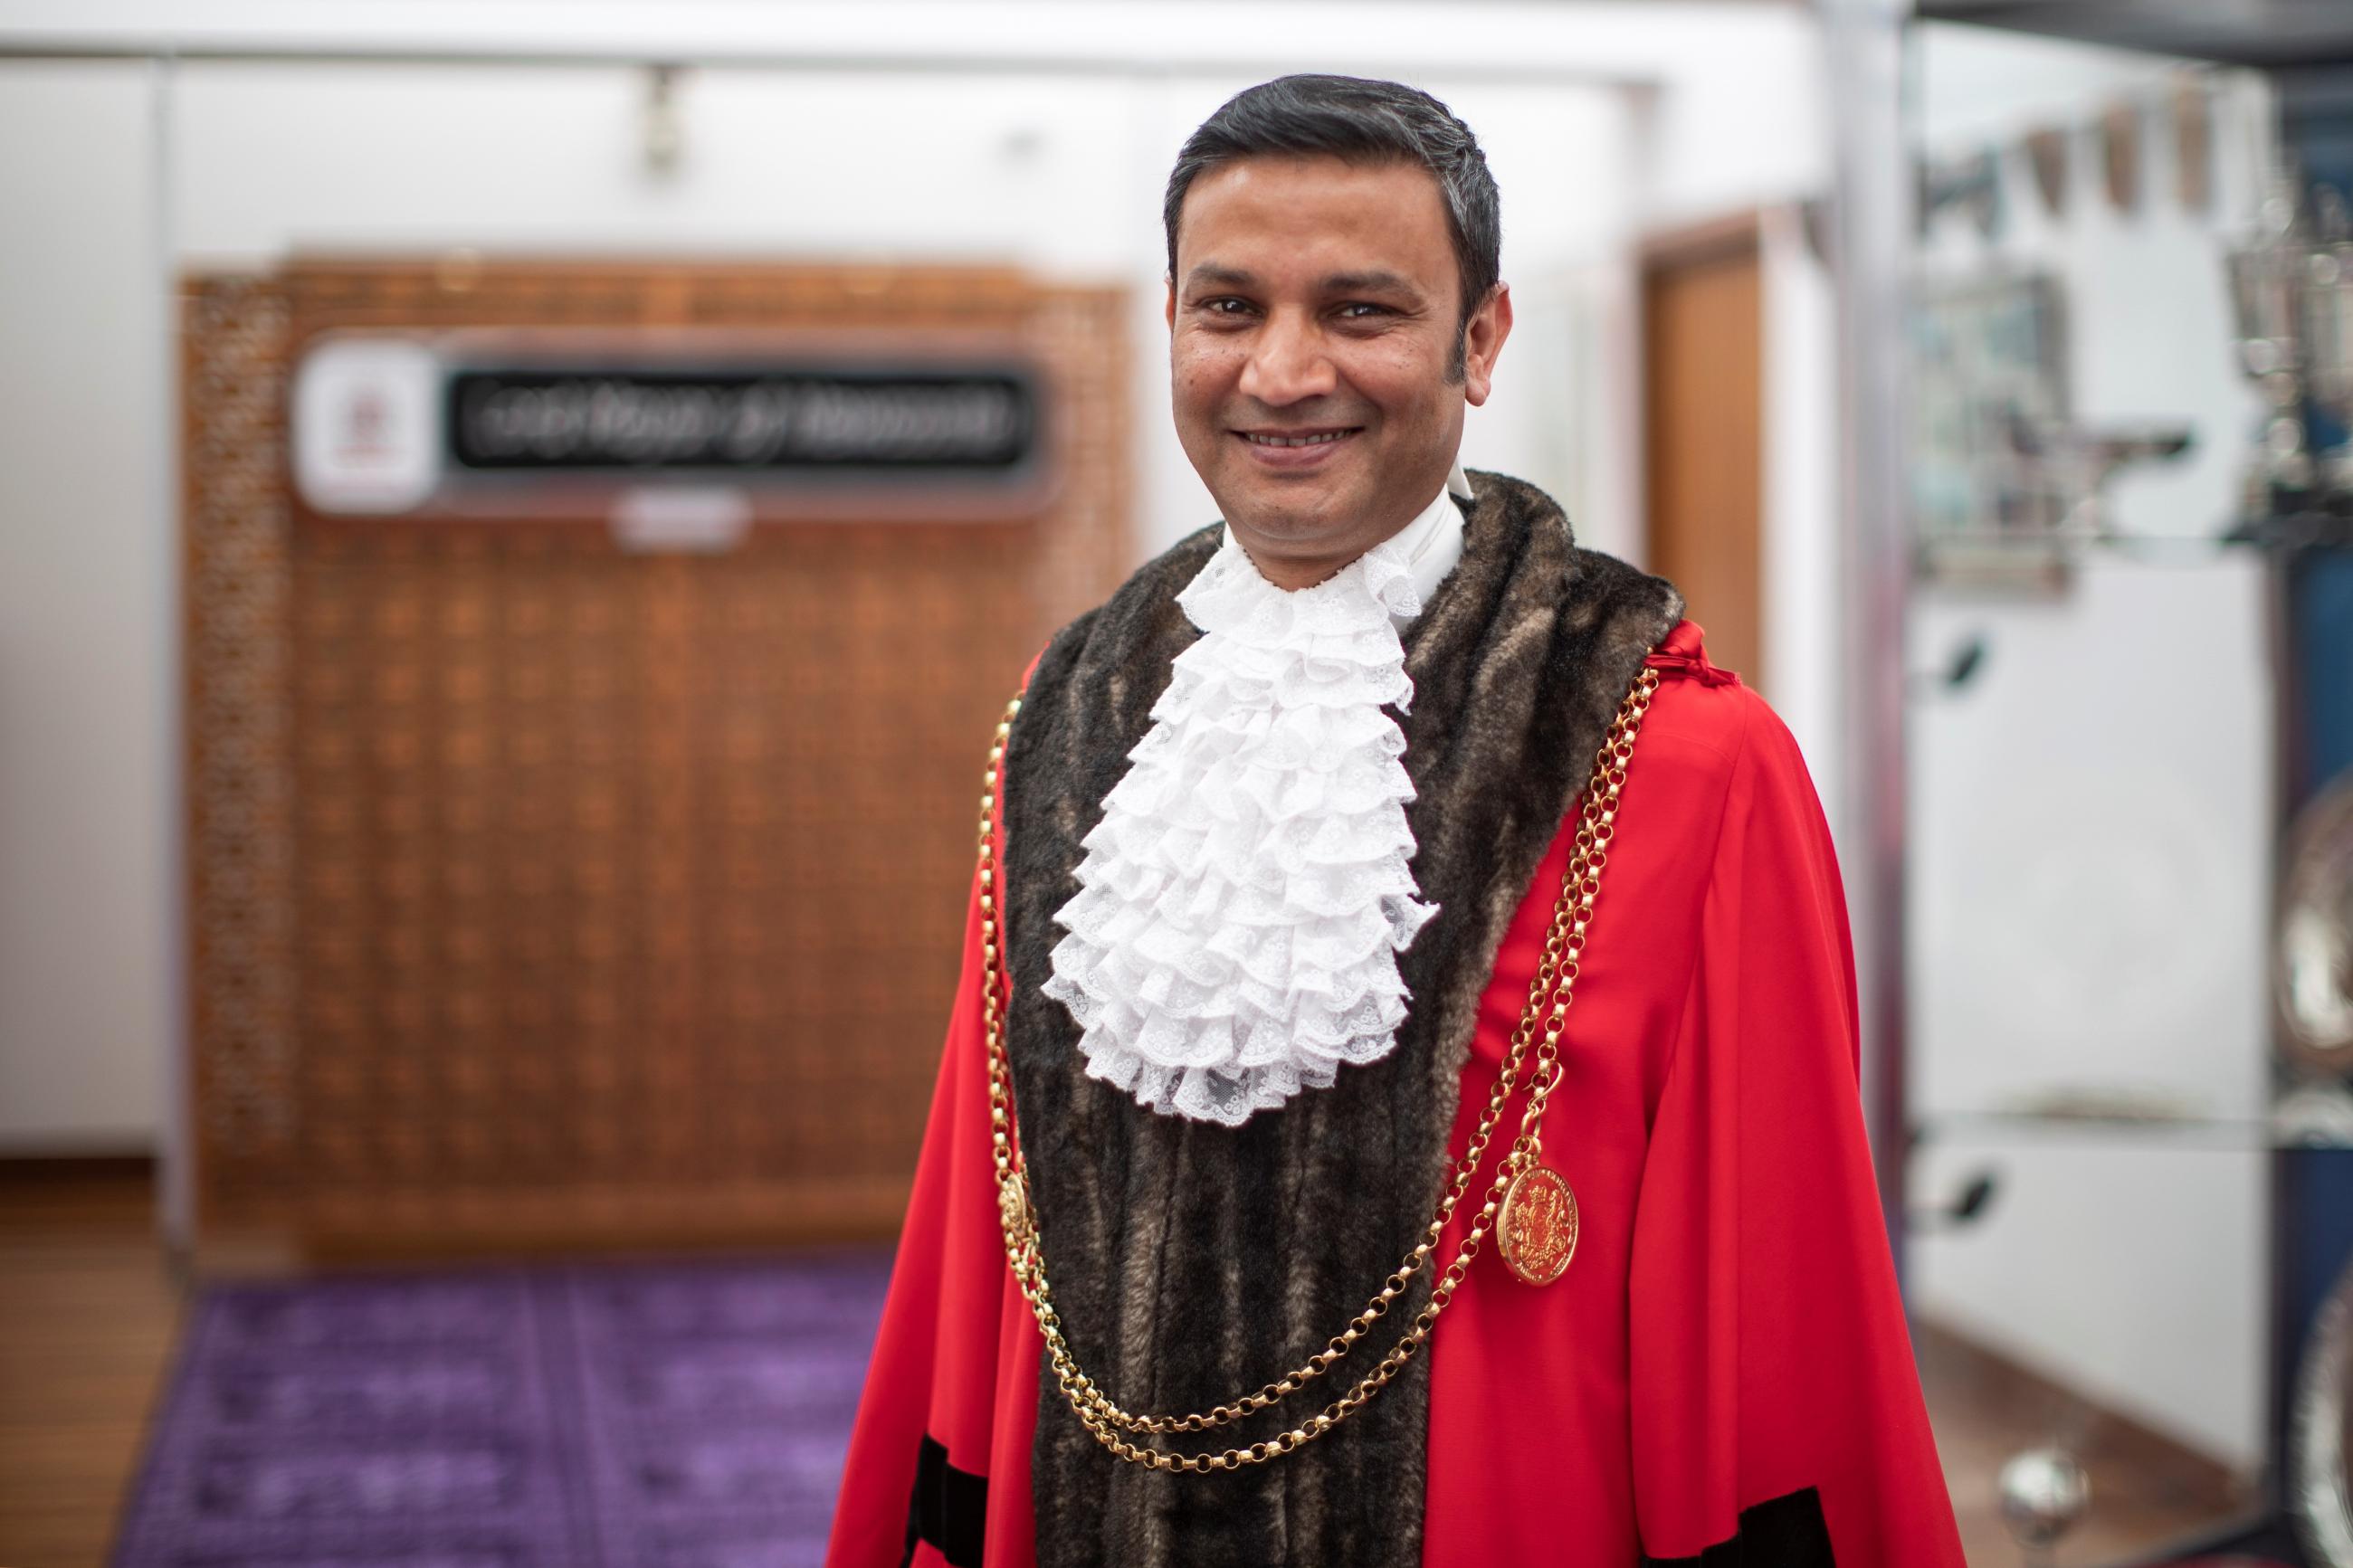 Cllr Habib Rahman, Lord Mayor of Newcastle